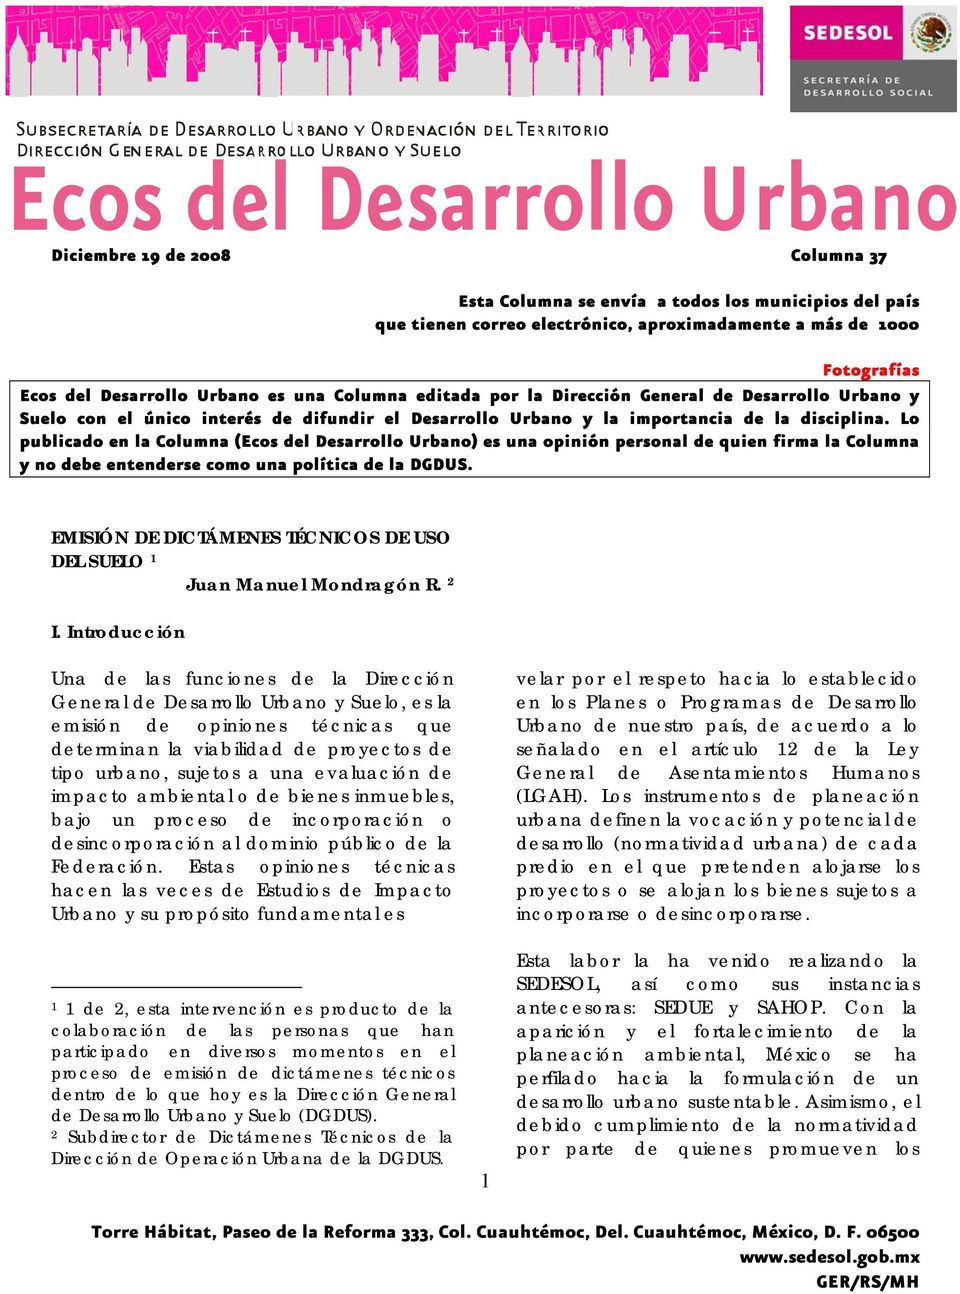 Lo publicado en la Columna (Ecos del Desarrollo Urbano) es una opinión personal de quien firma la Columna y no debe entenderse como una política de la DGDUS.